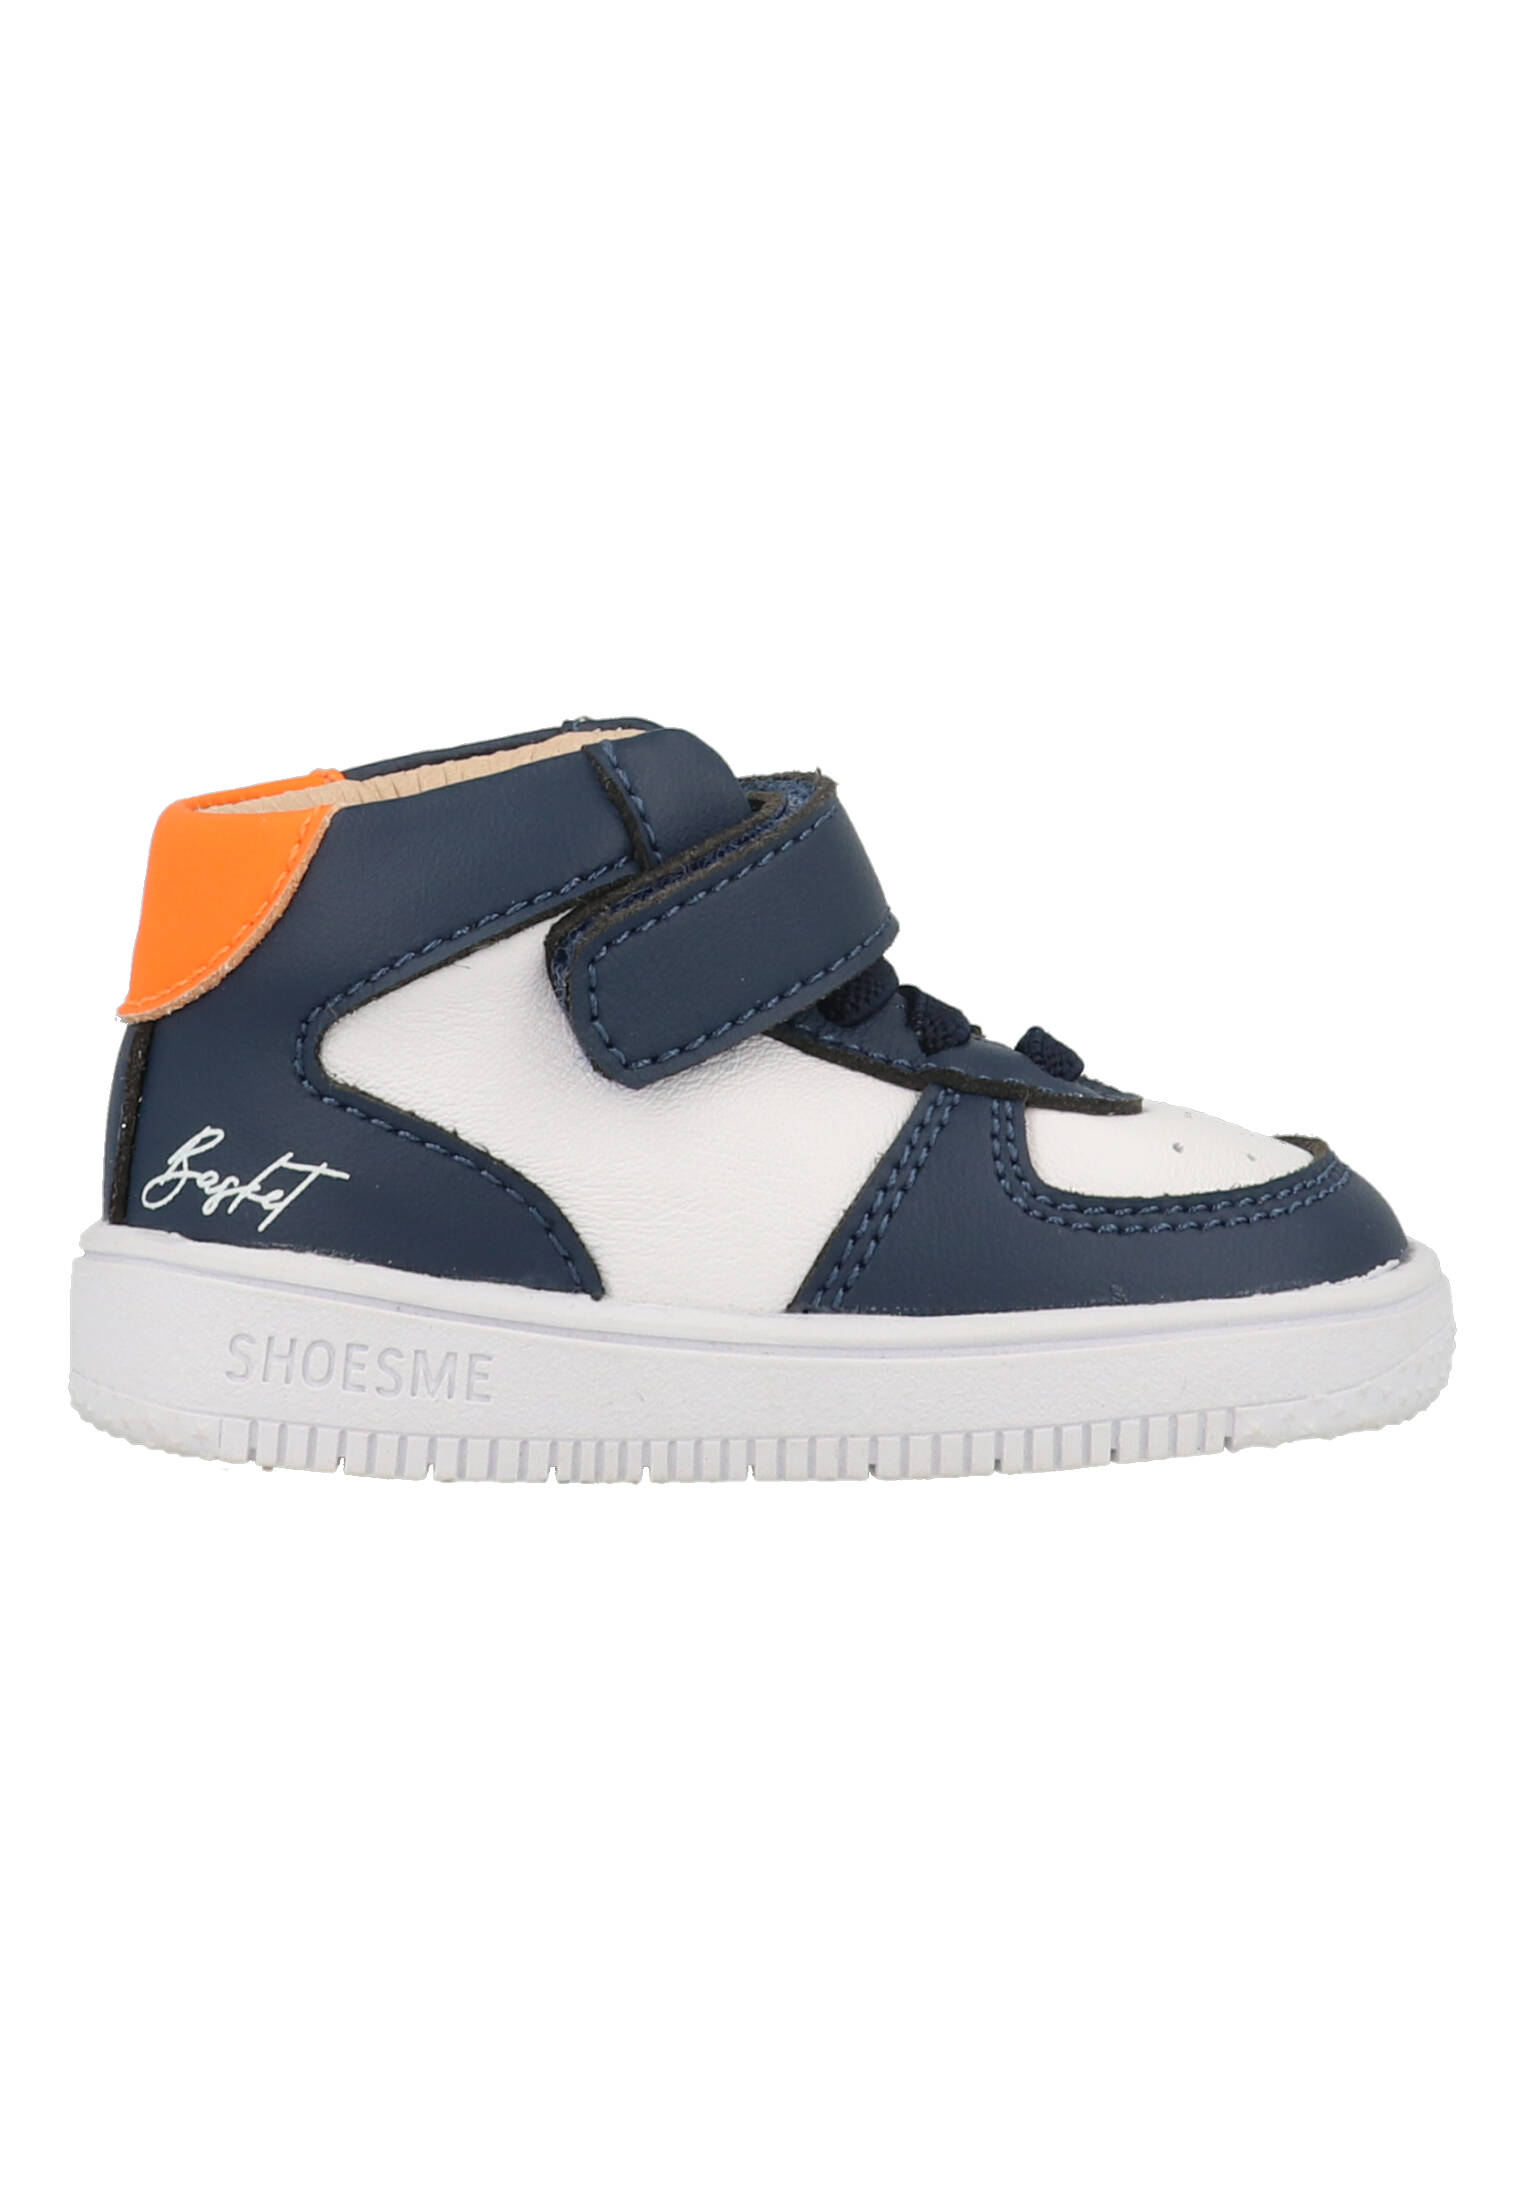 Shoesme baby sneaker - Blauw wit - Maat 22